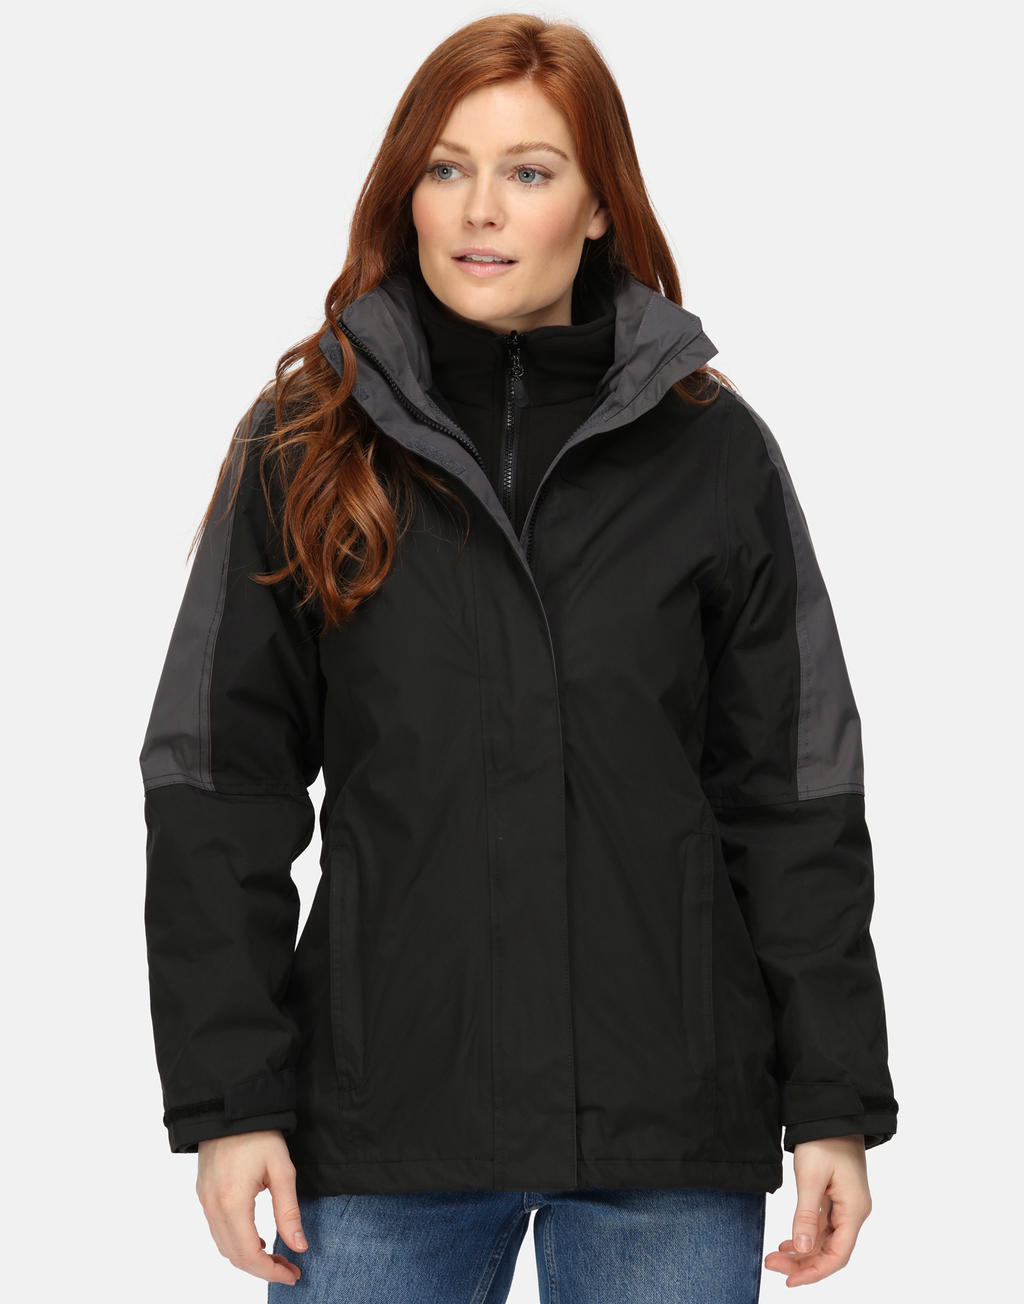  Ladies Defender III 3-In-1 Jacket in Farbe Black/Seal Grey